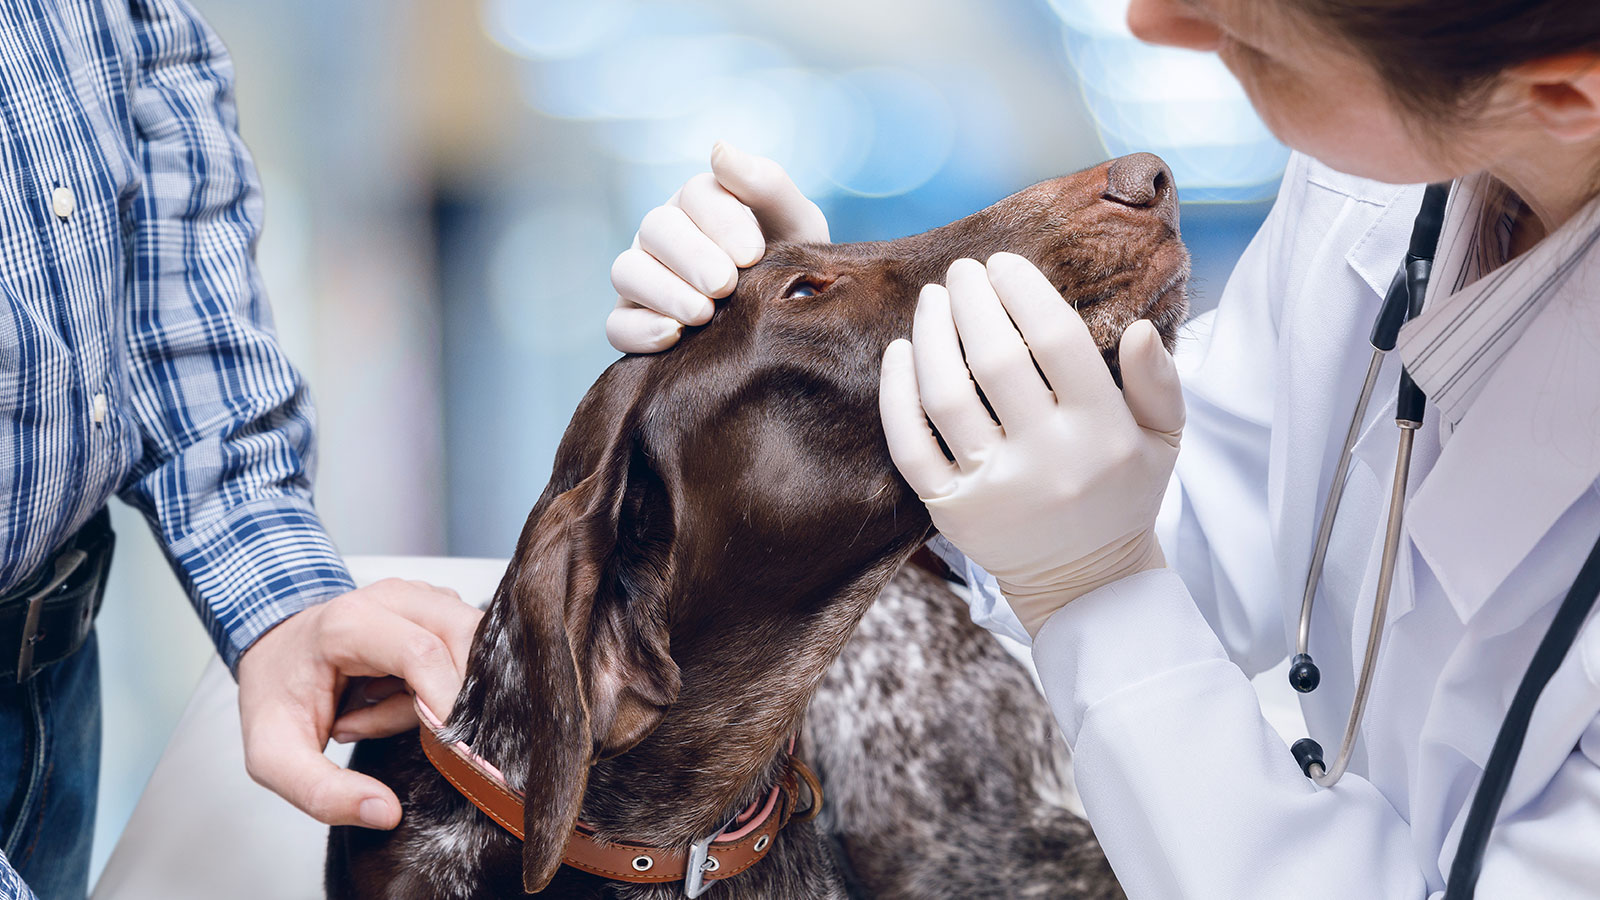 Undgå stress hos din hund ved dyrlægen Giv din hund en oplevelse Lærerstandens